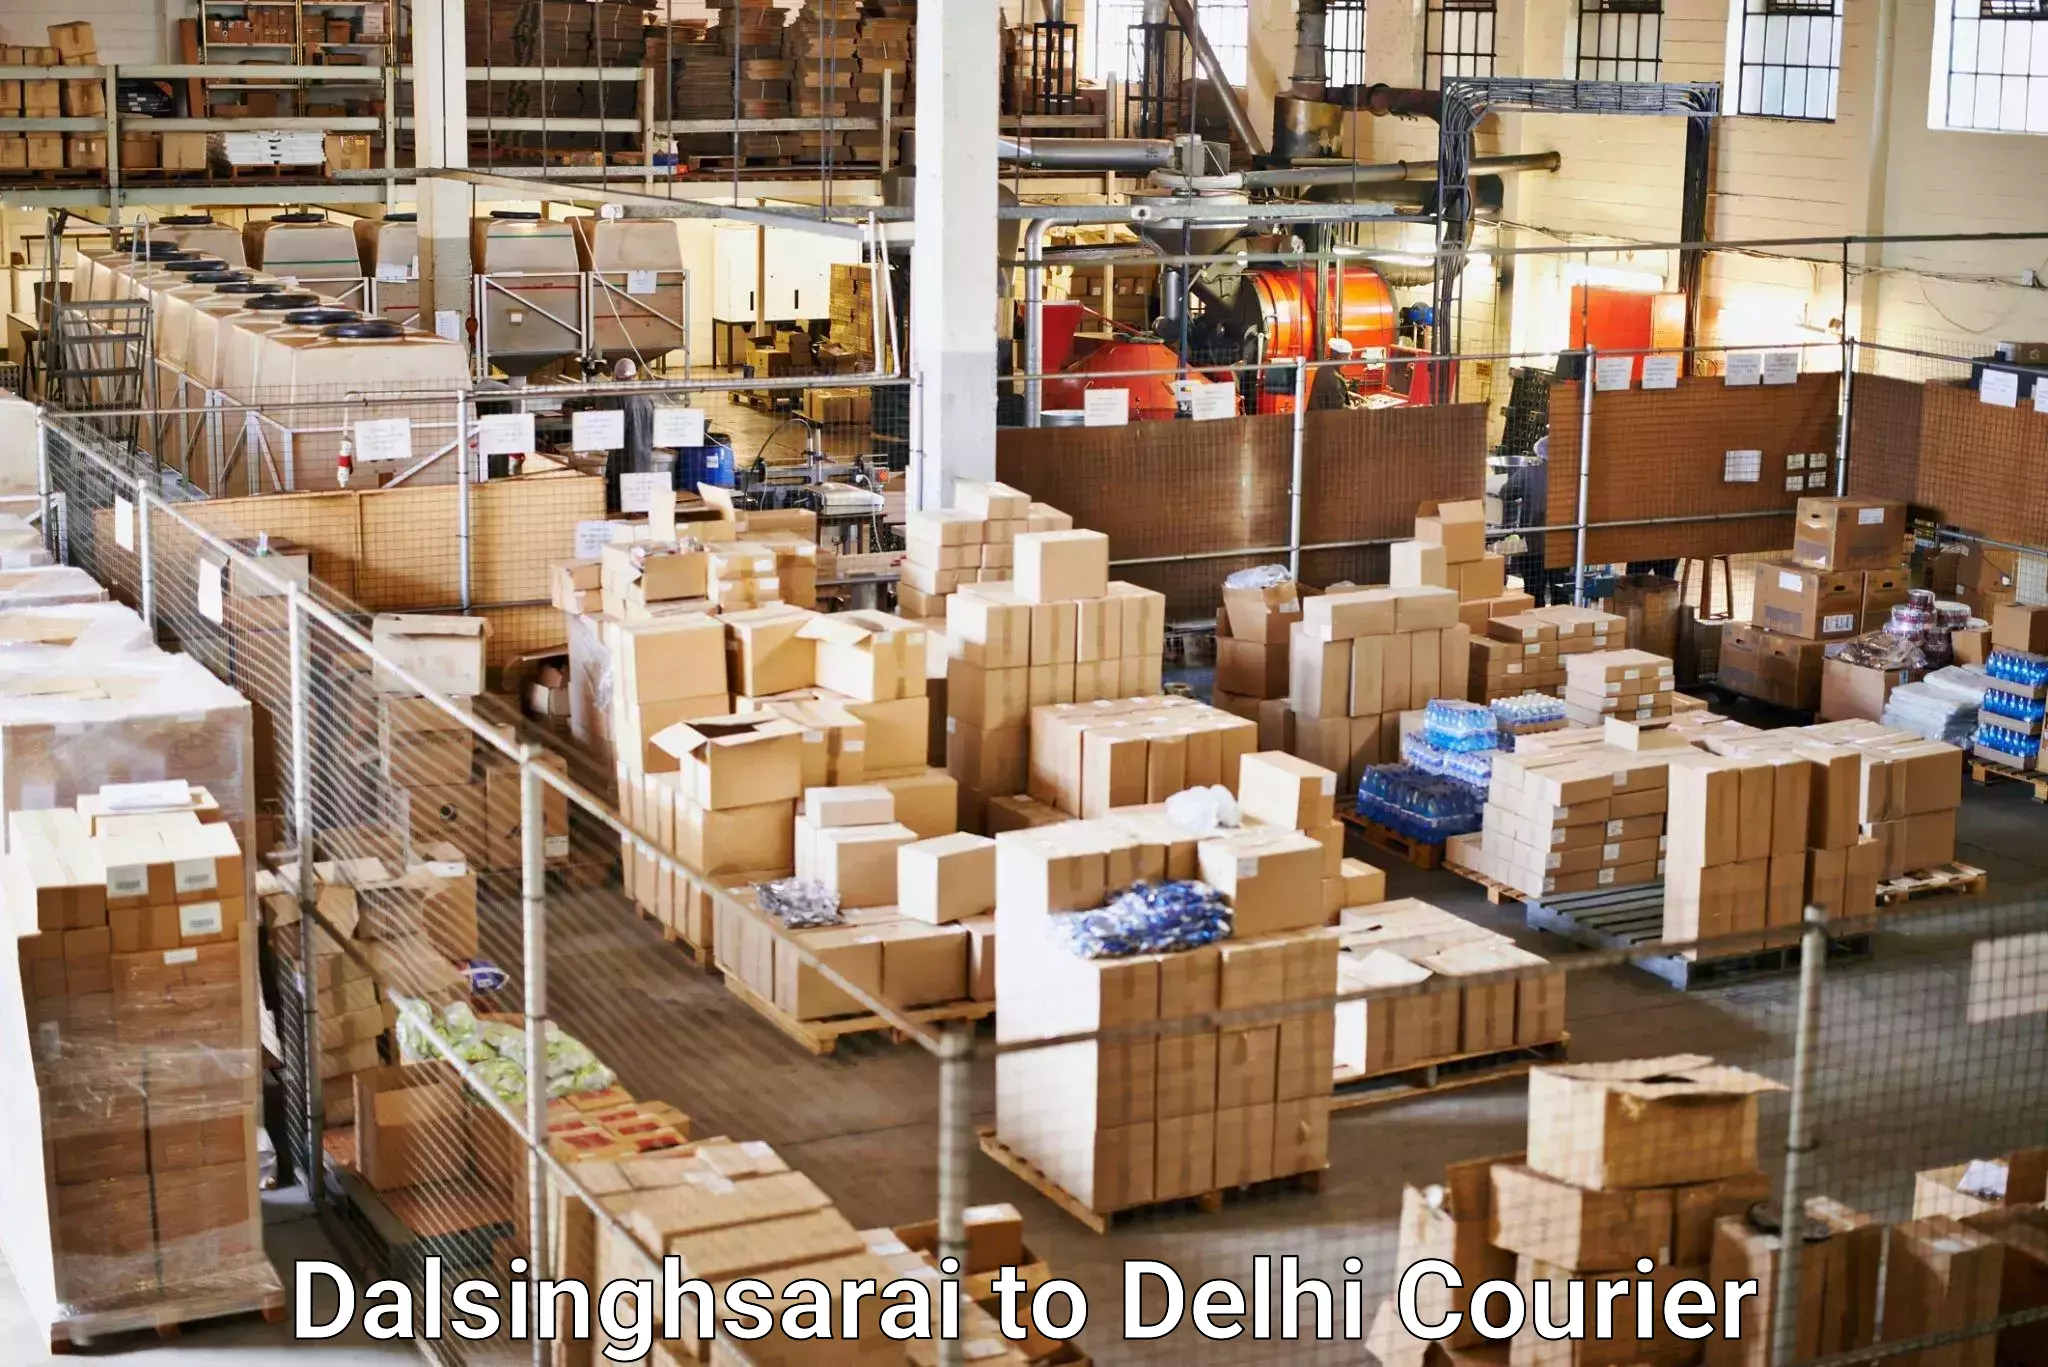 Door-to-door shipping in Dalsinghsarai to NCR